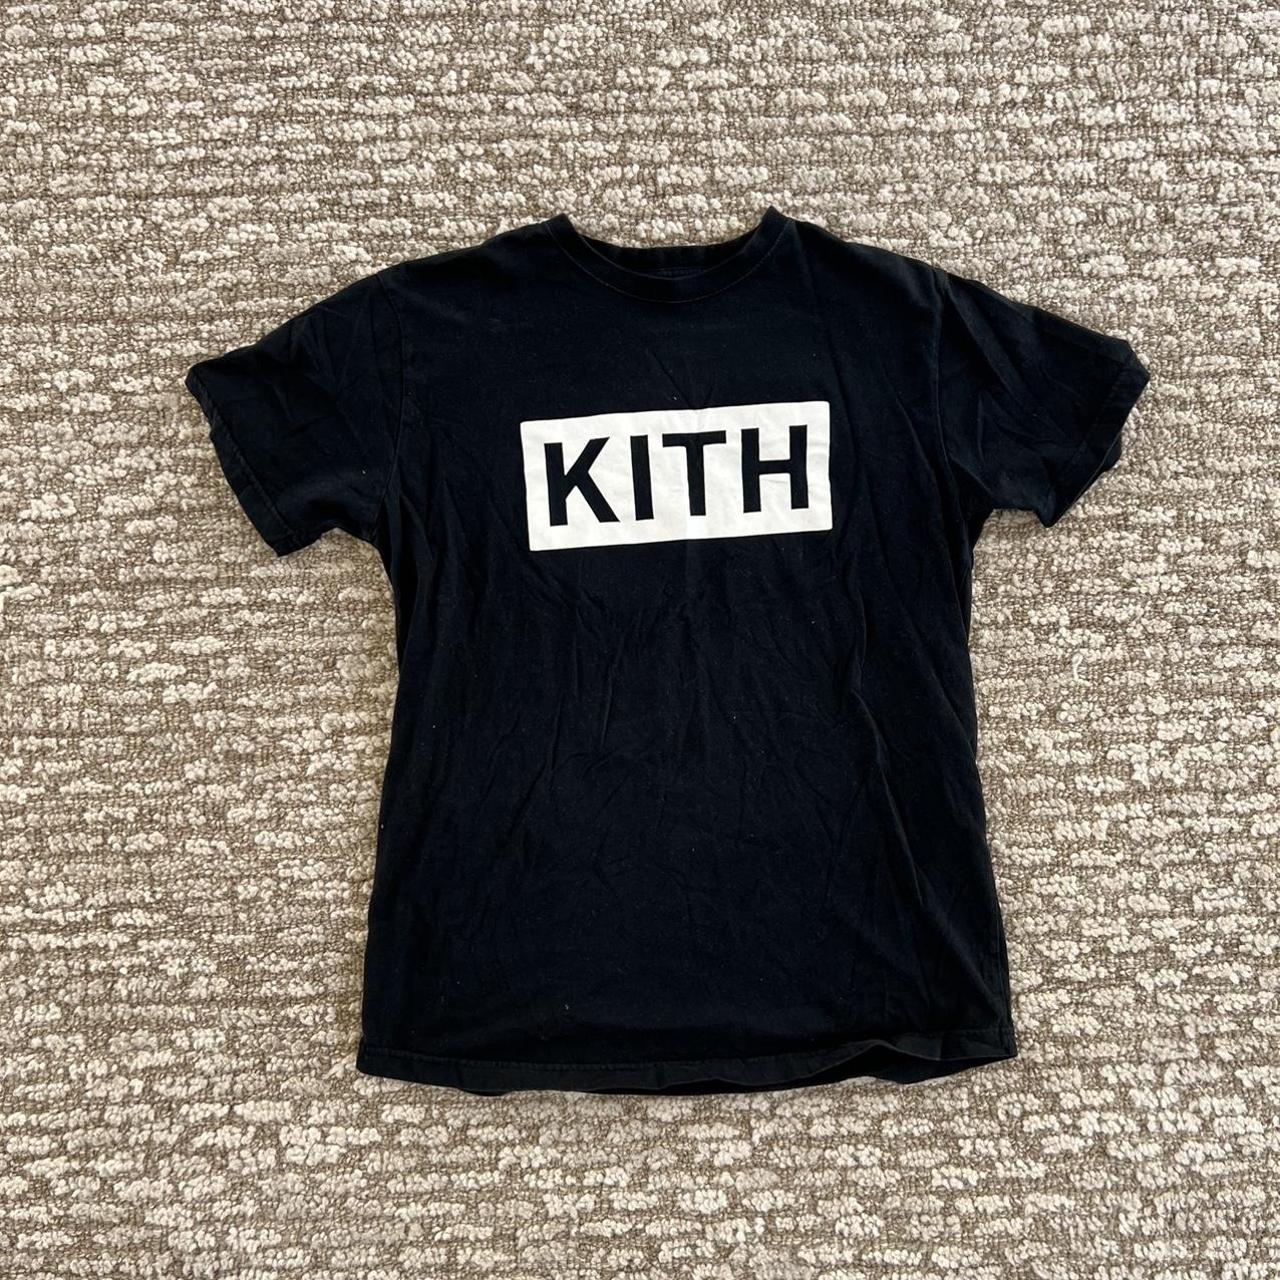 KITH t shirt - Depop